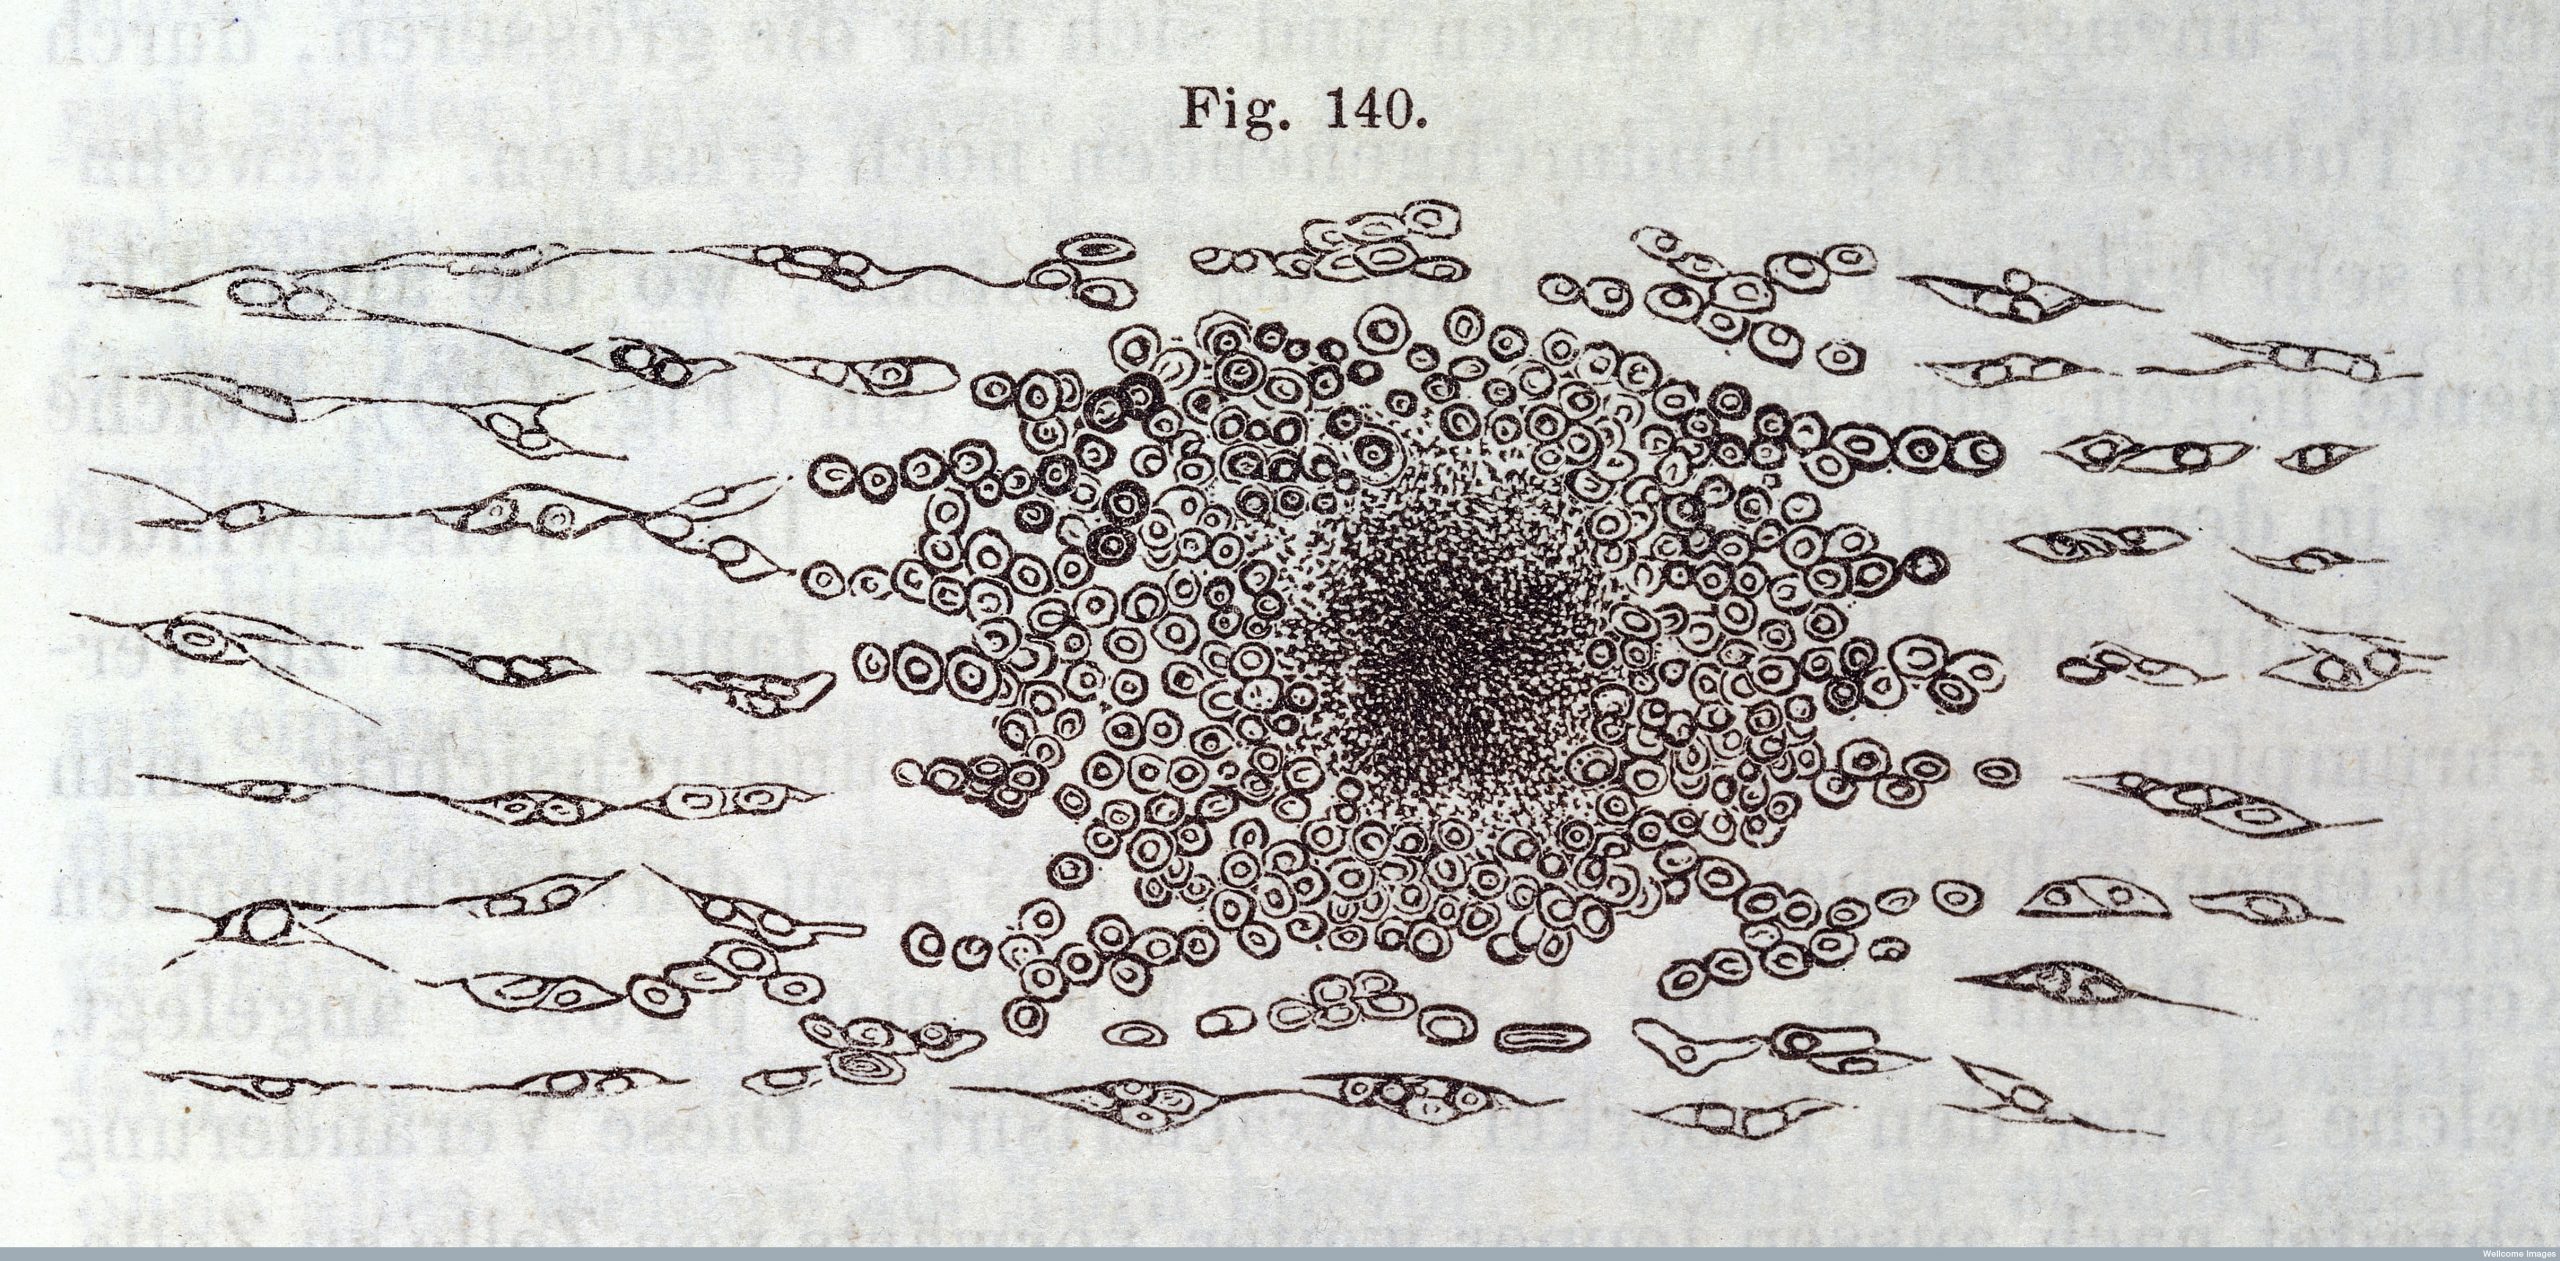 Digitalização da ilustração em preto e branco da teoria celular de Rudolf Virchow.